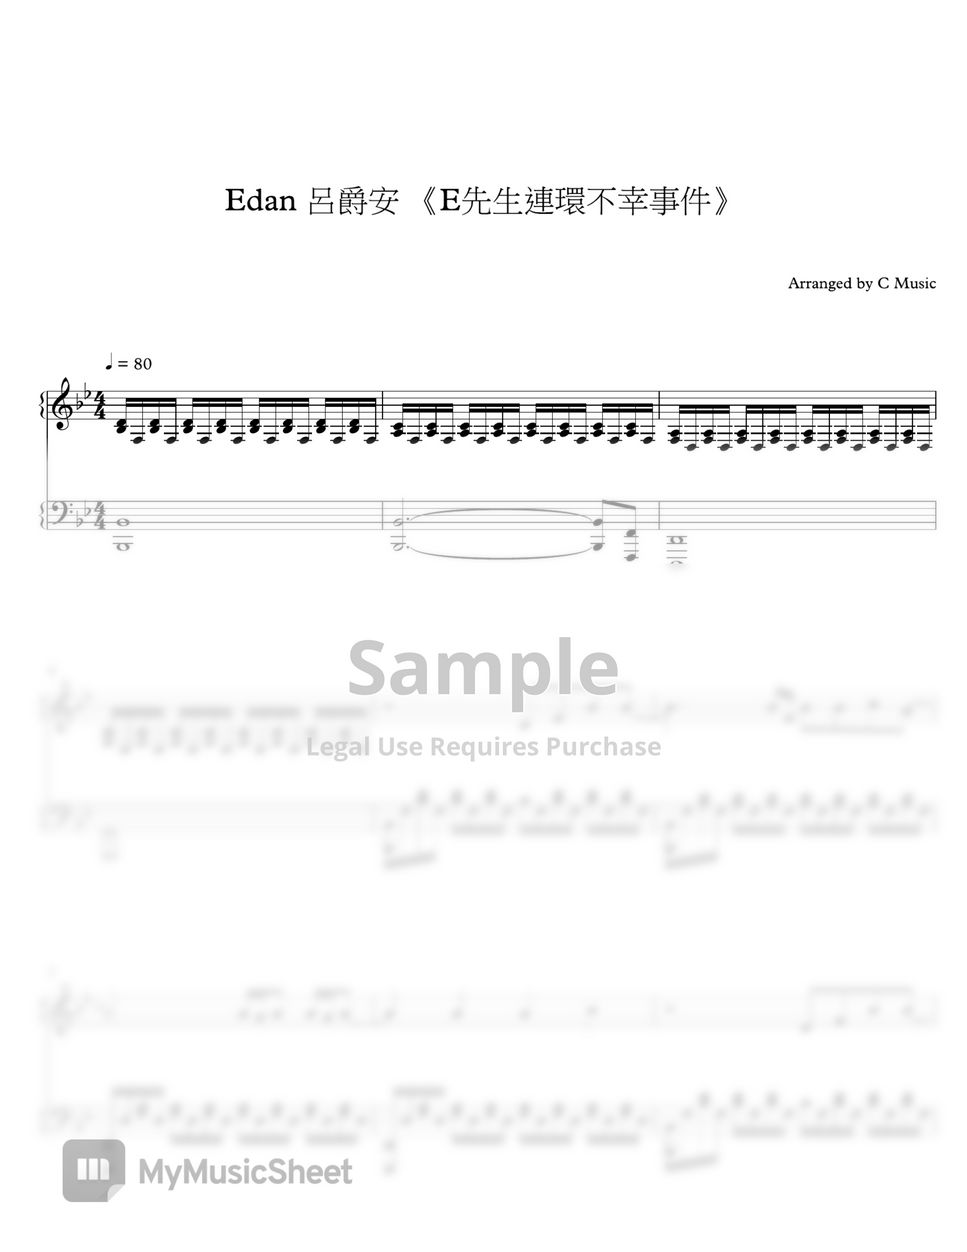 Edan 呂爵安 - E先生連環不幸事件 by C Music